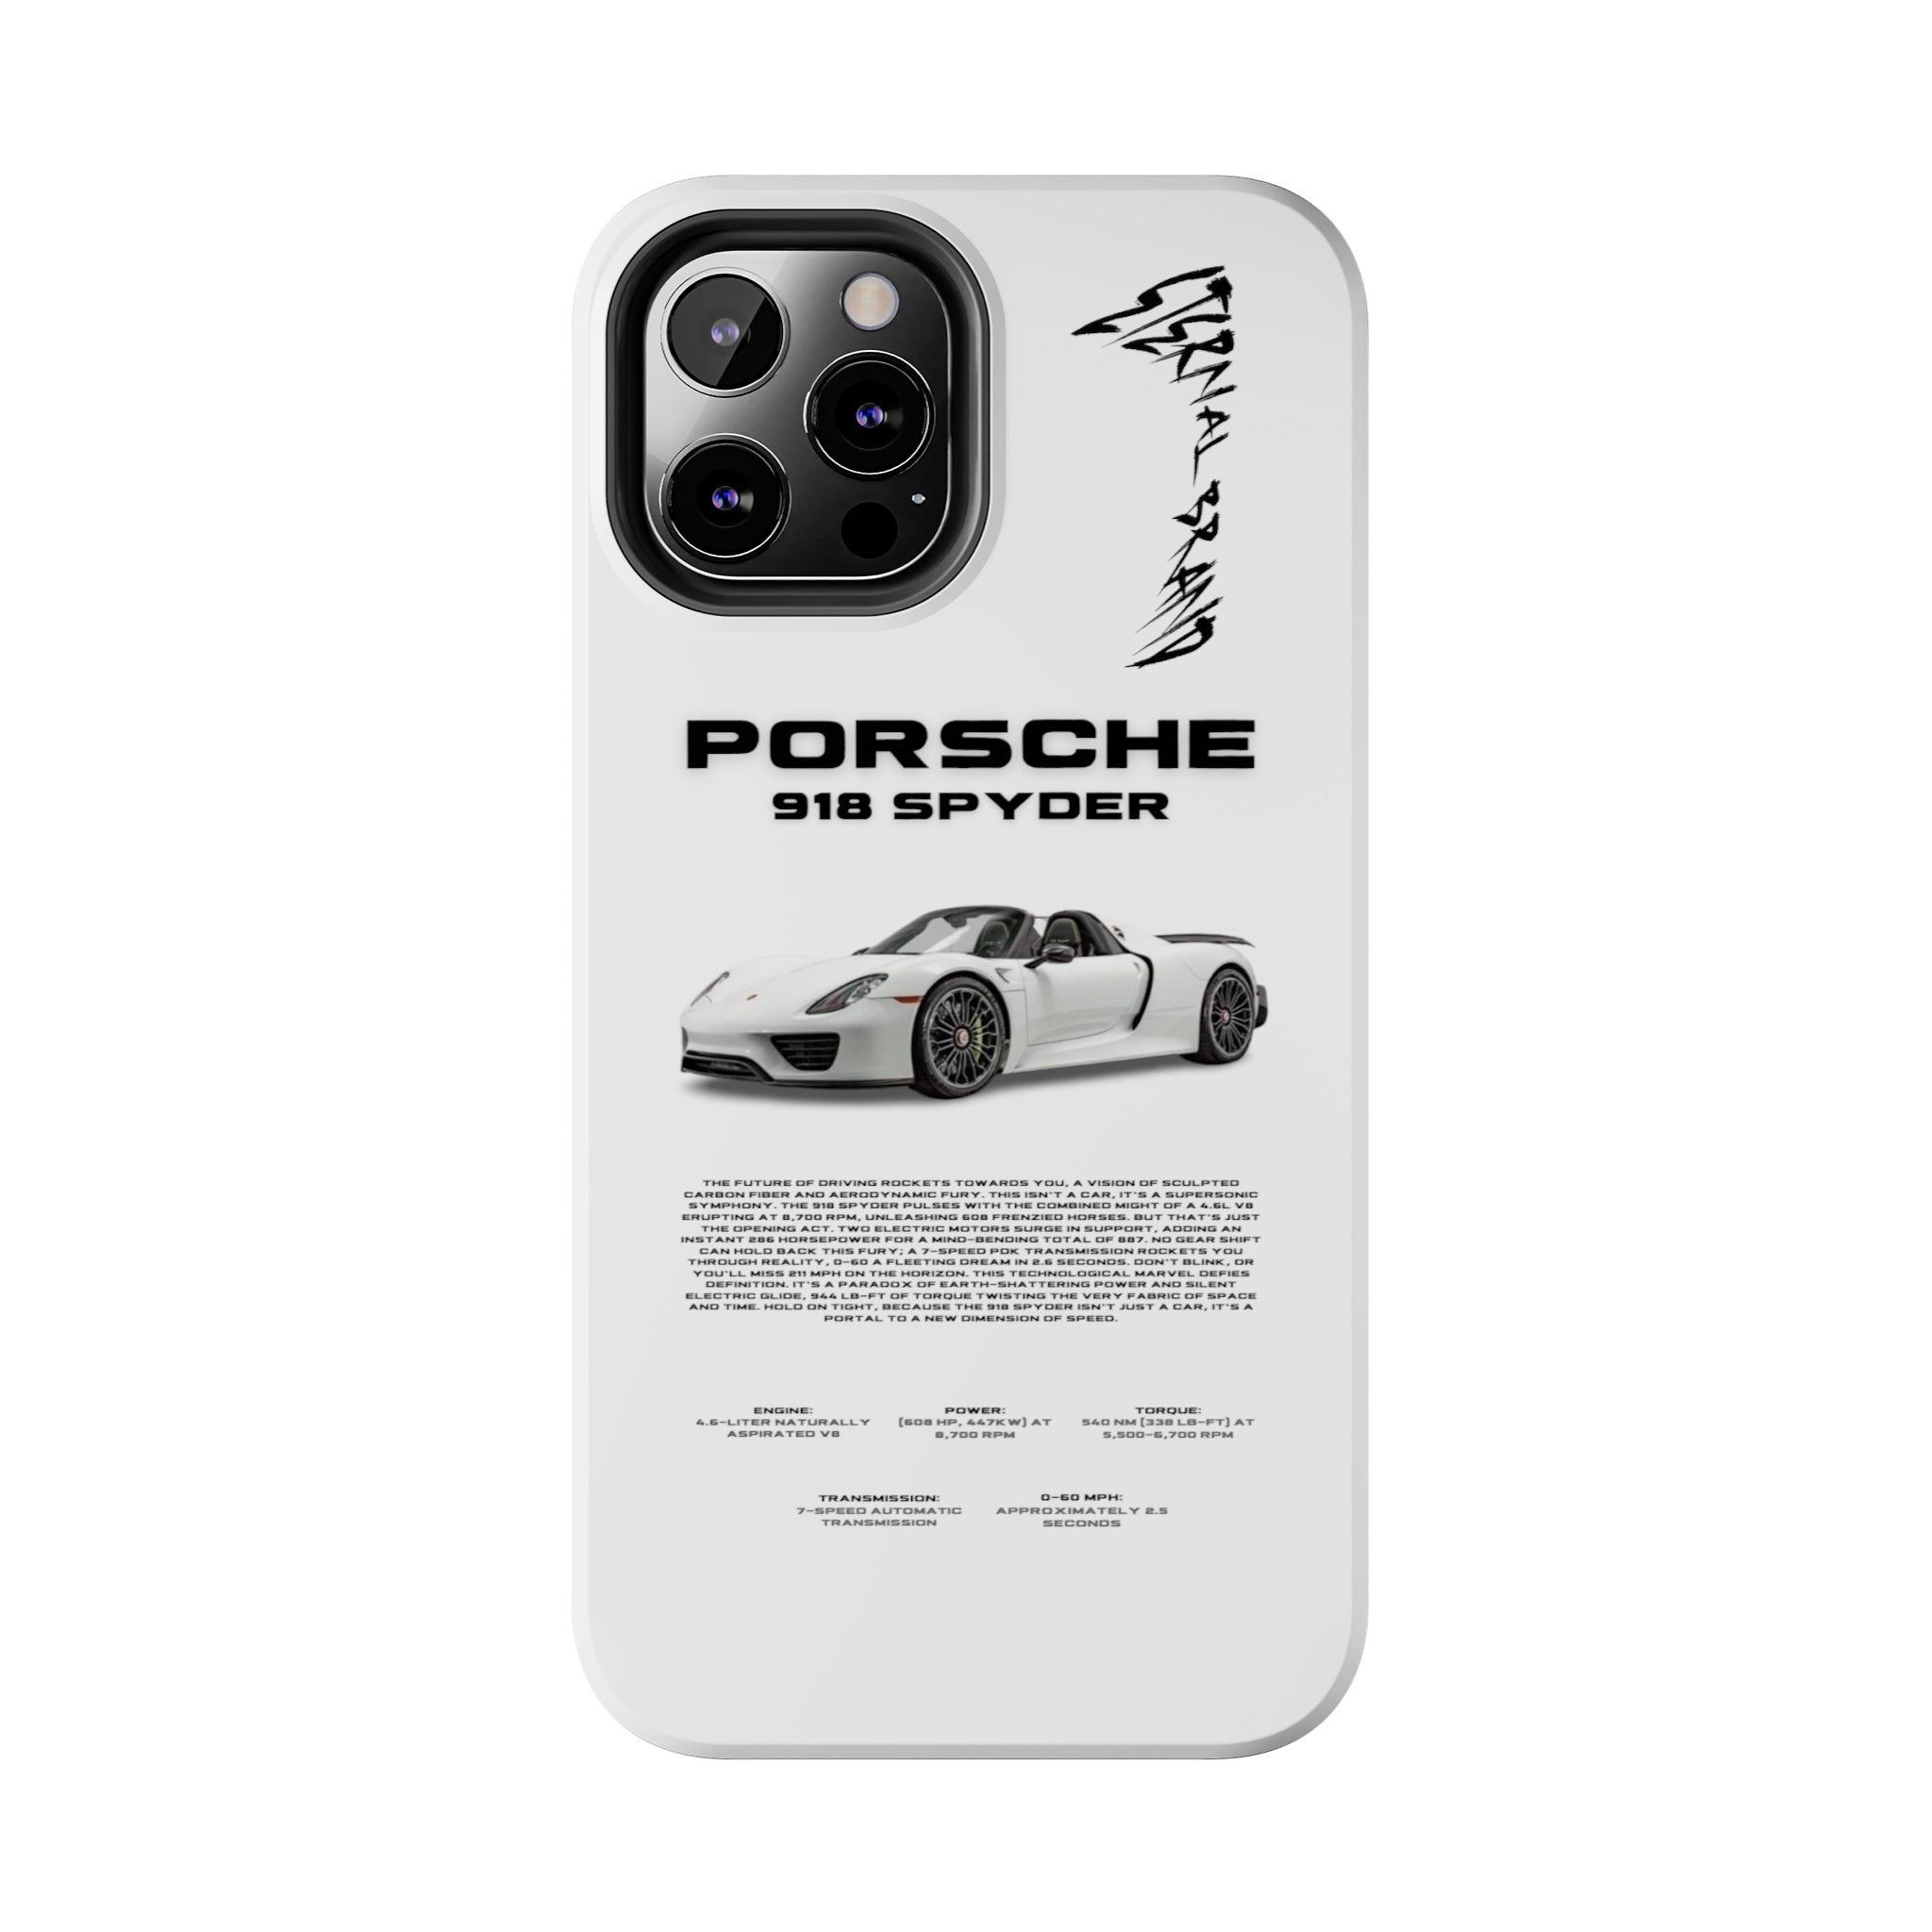 Porsche 918 Spyder "White"